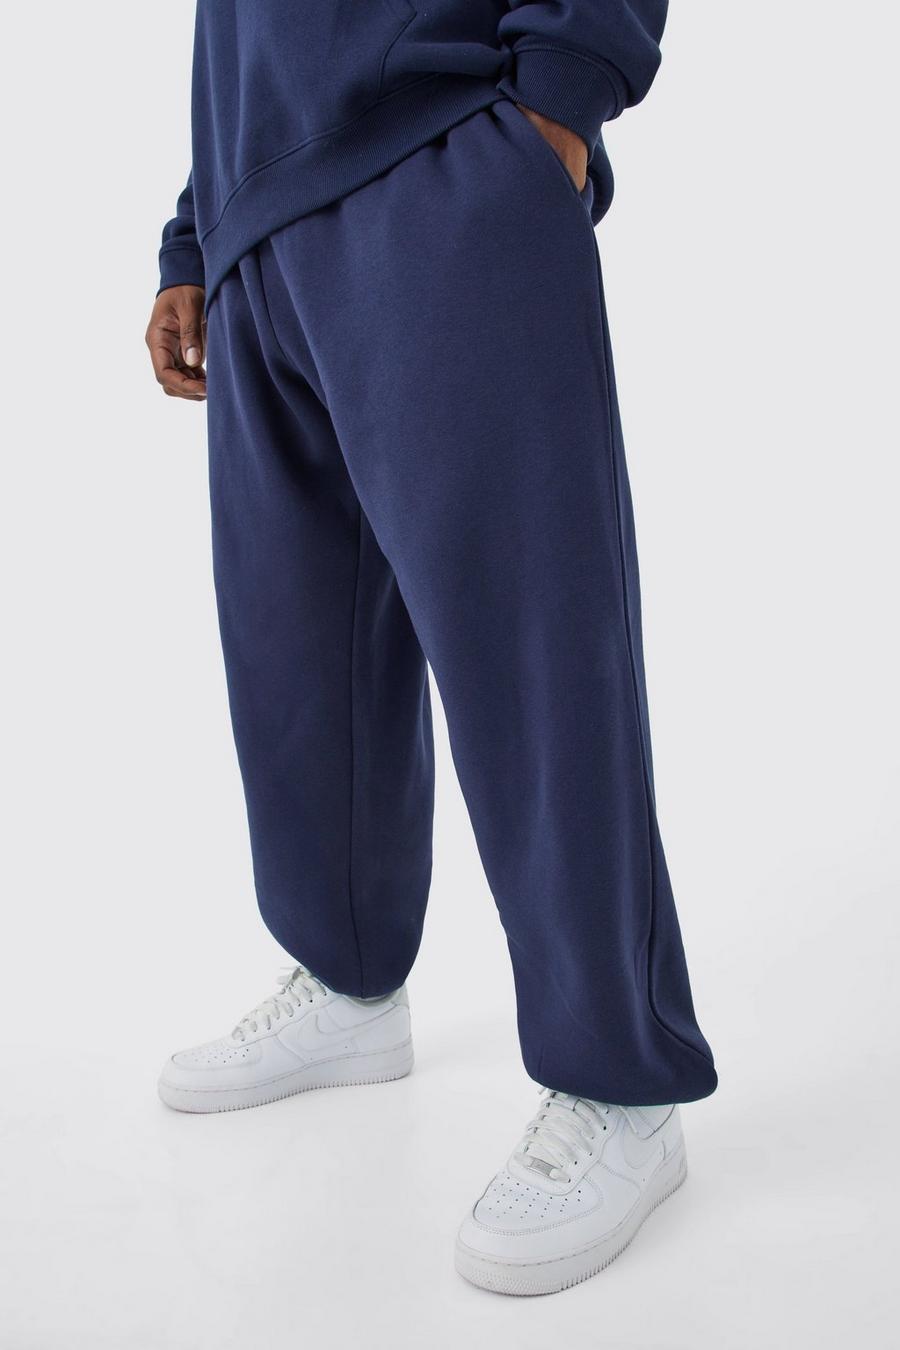 Pantalón deportivo Plus básico oversize, Navy